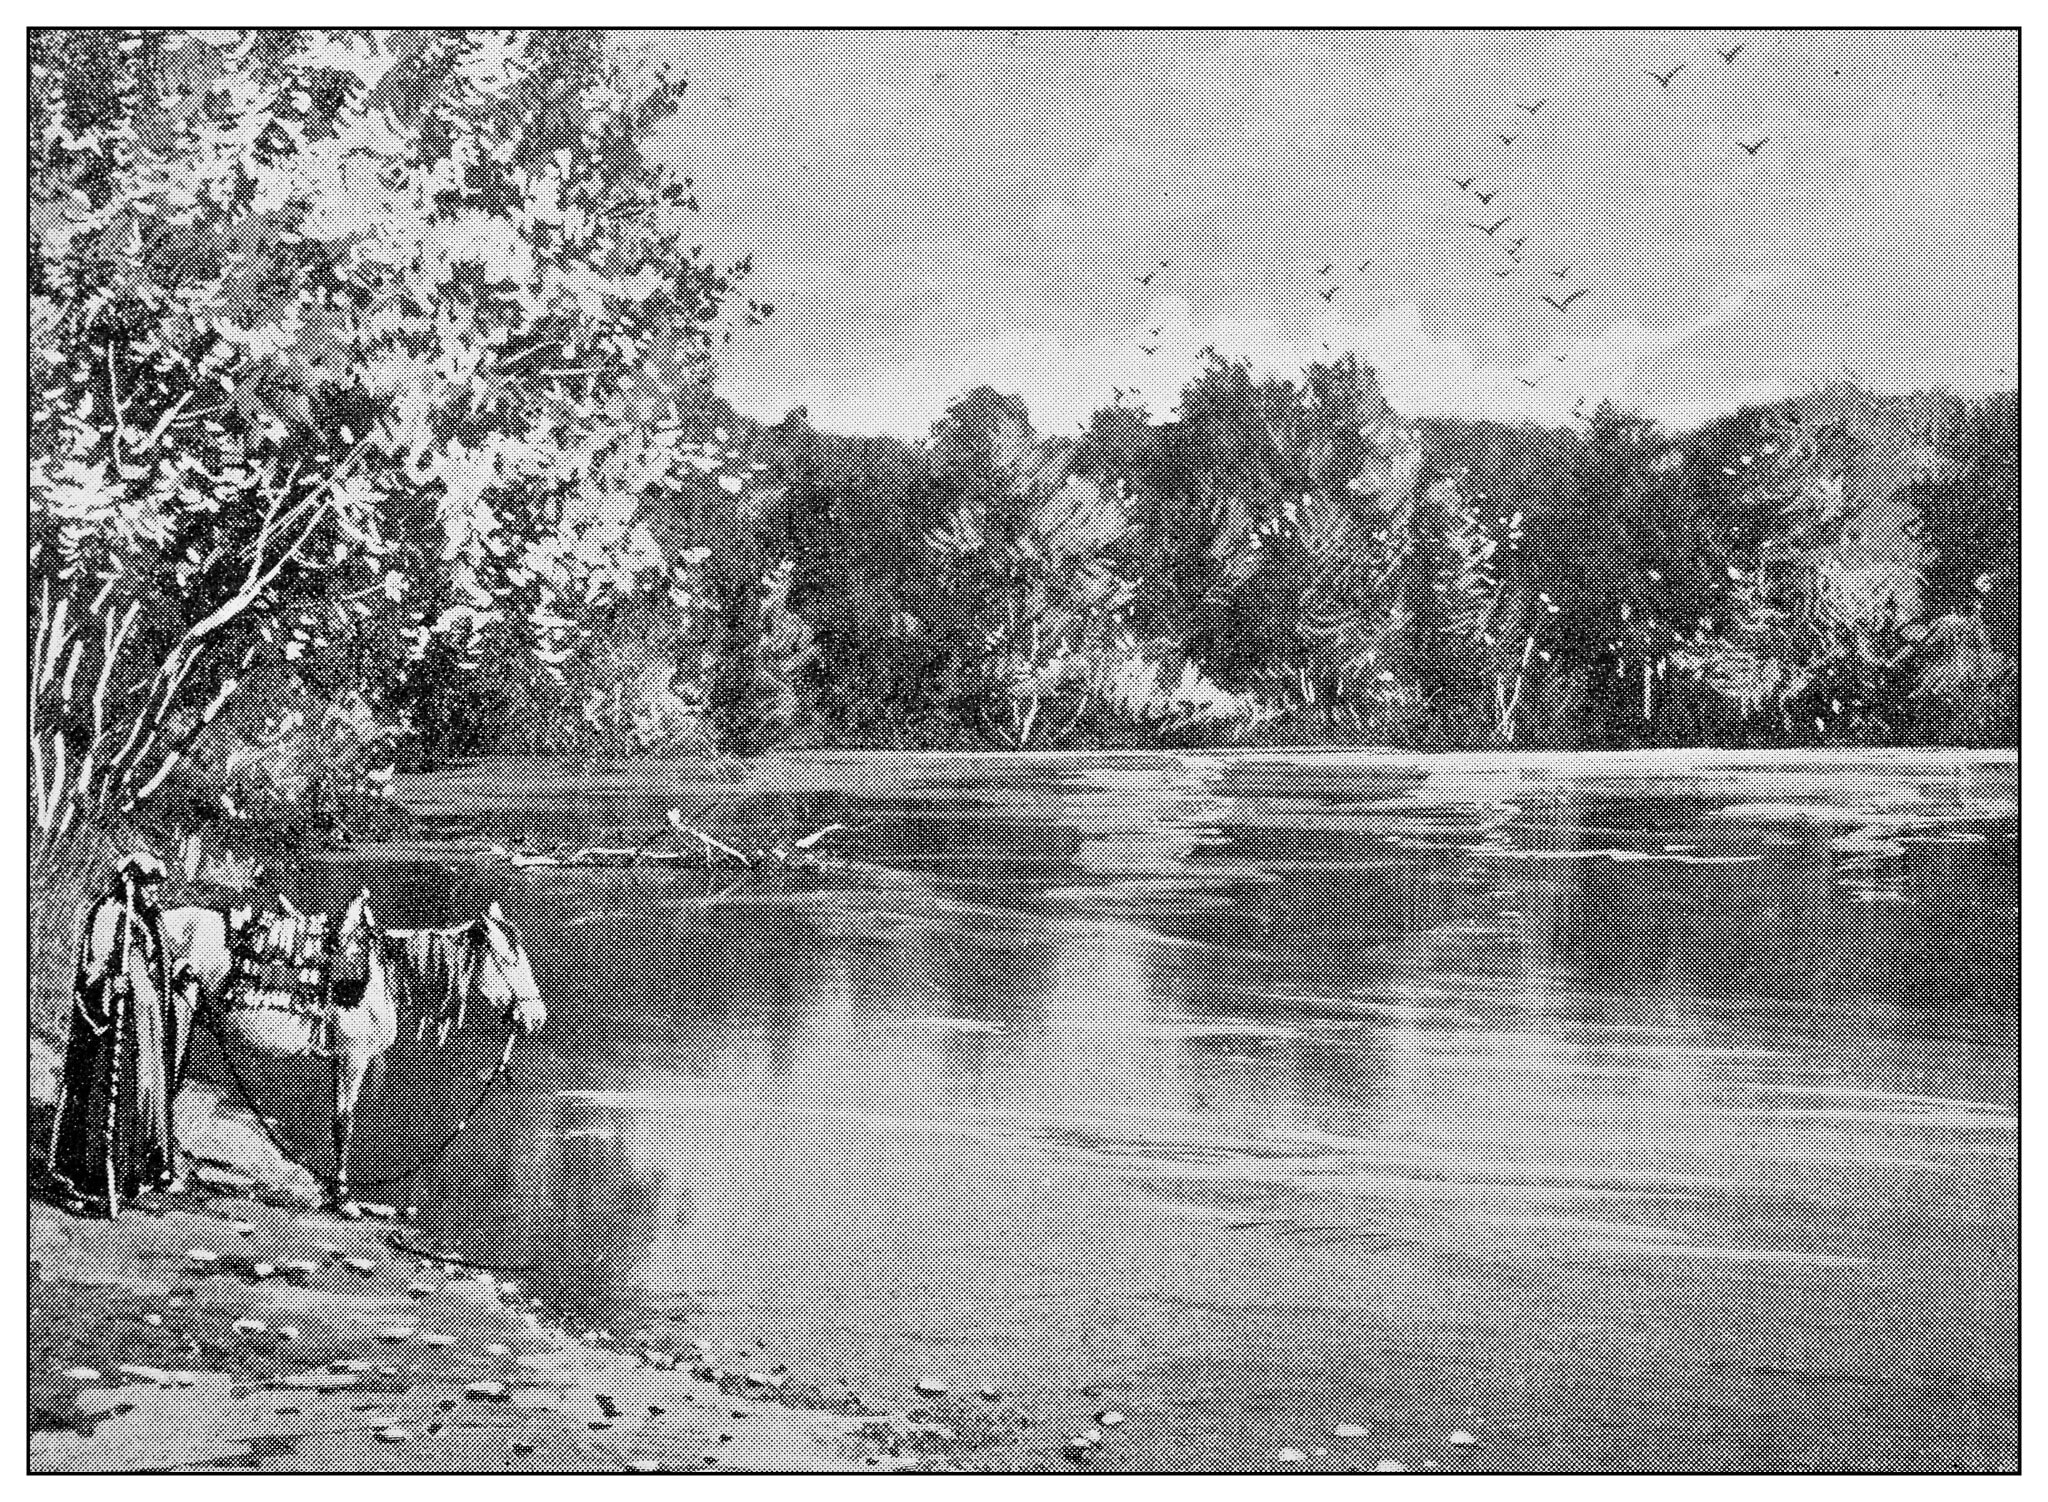 תמונה ישנה של נהר הירדן לפני שהוצר ונסכר (צילום: ilbusca, iStock at Getty Images)